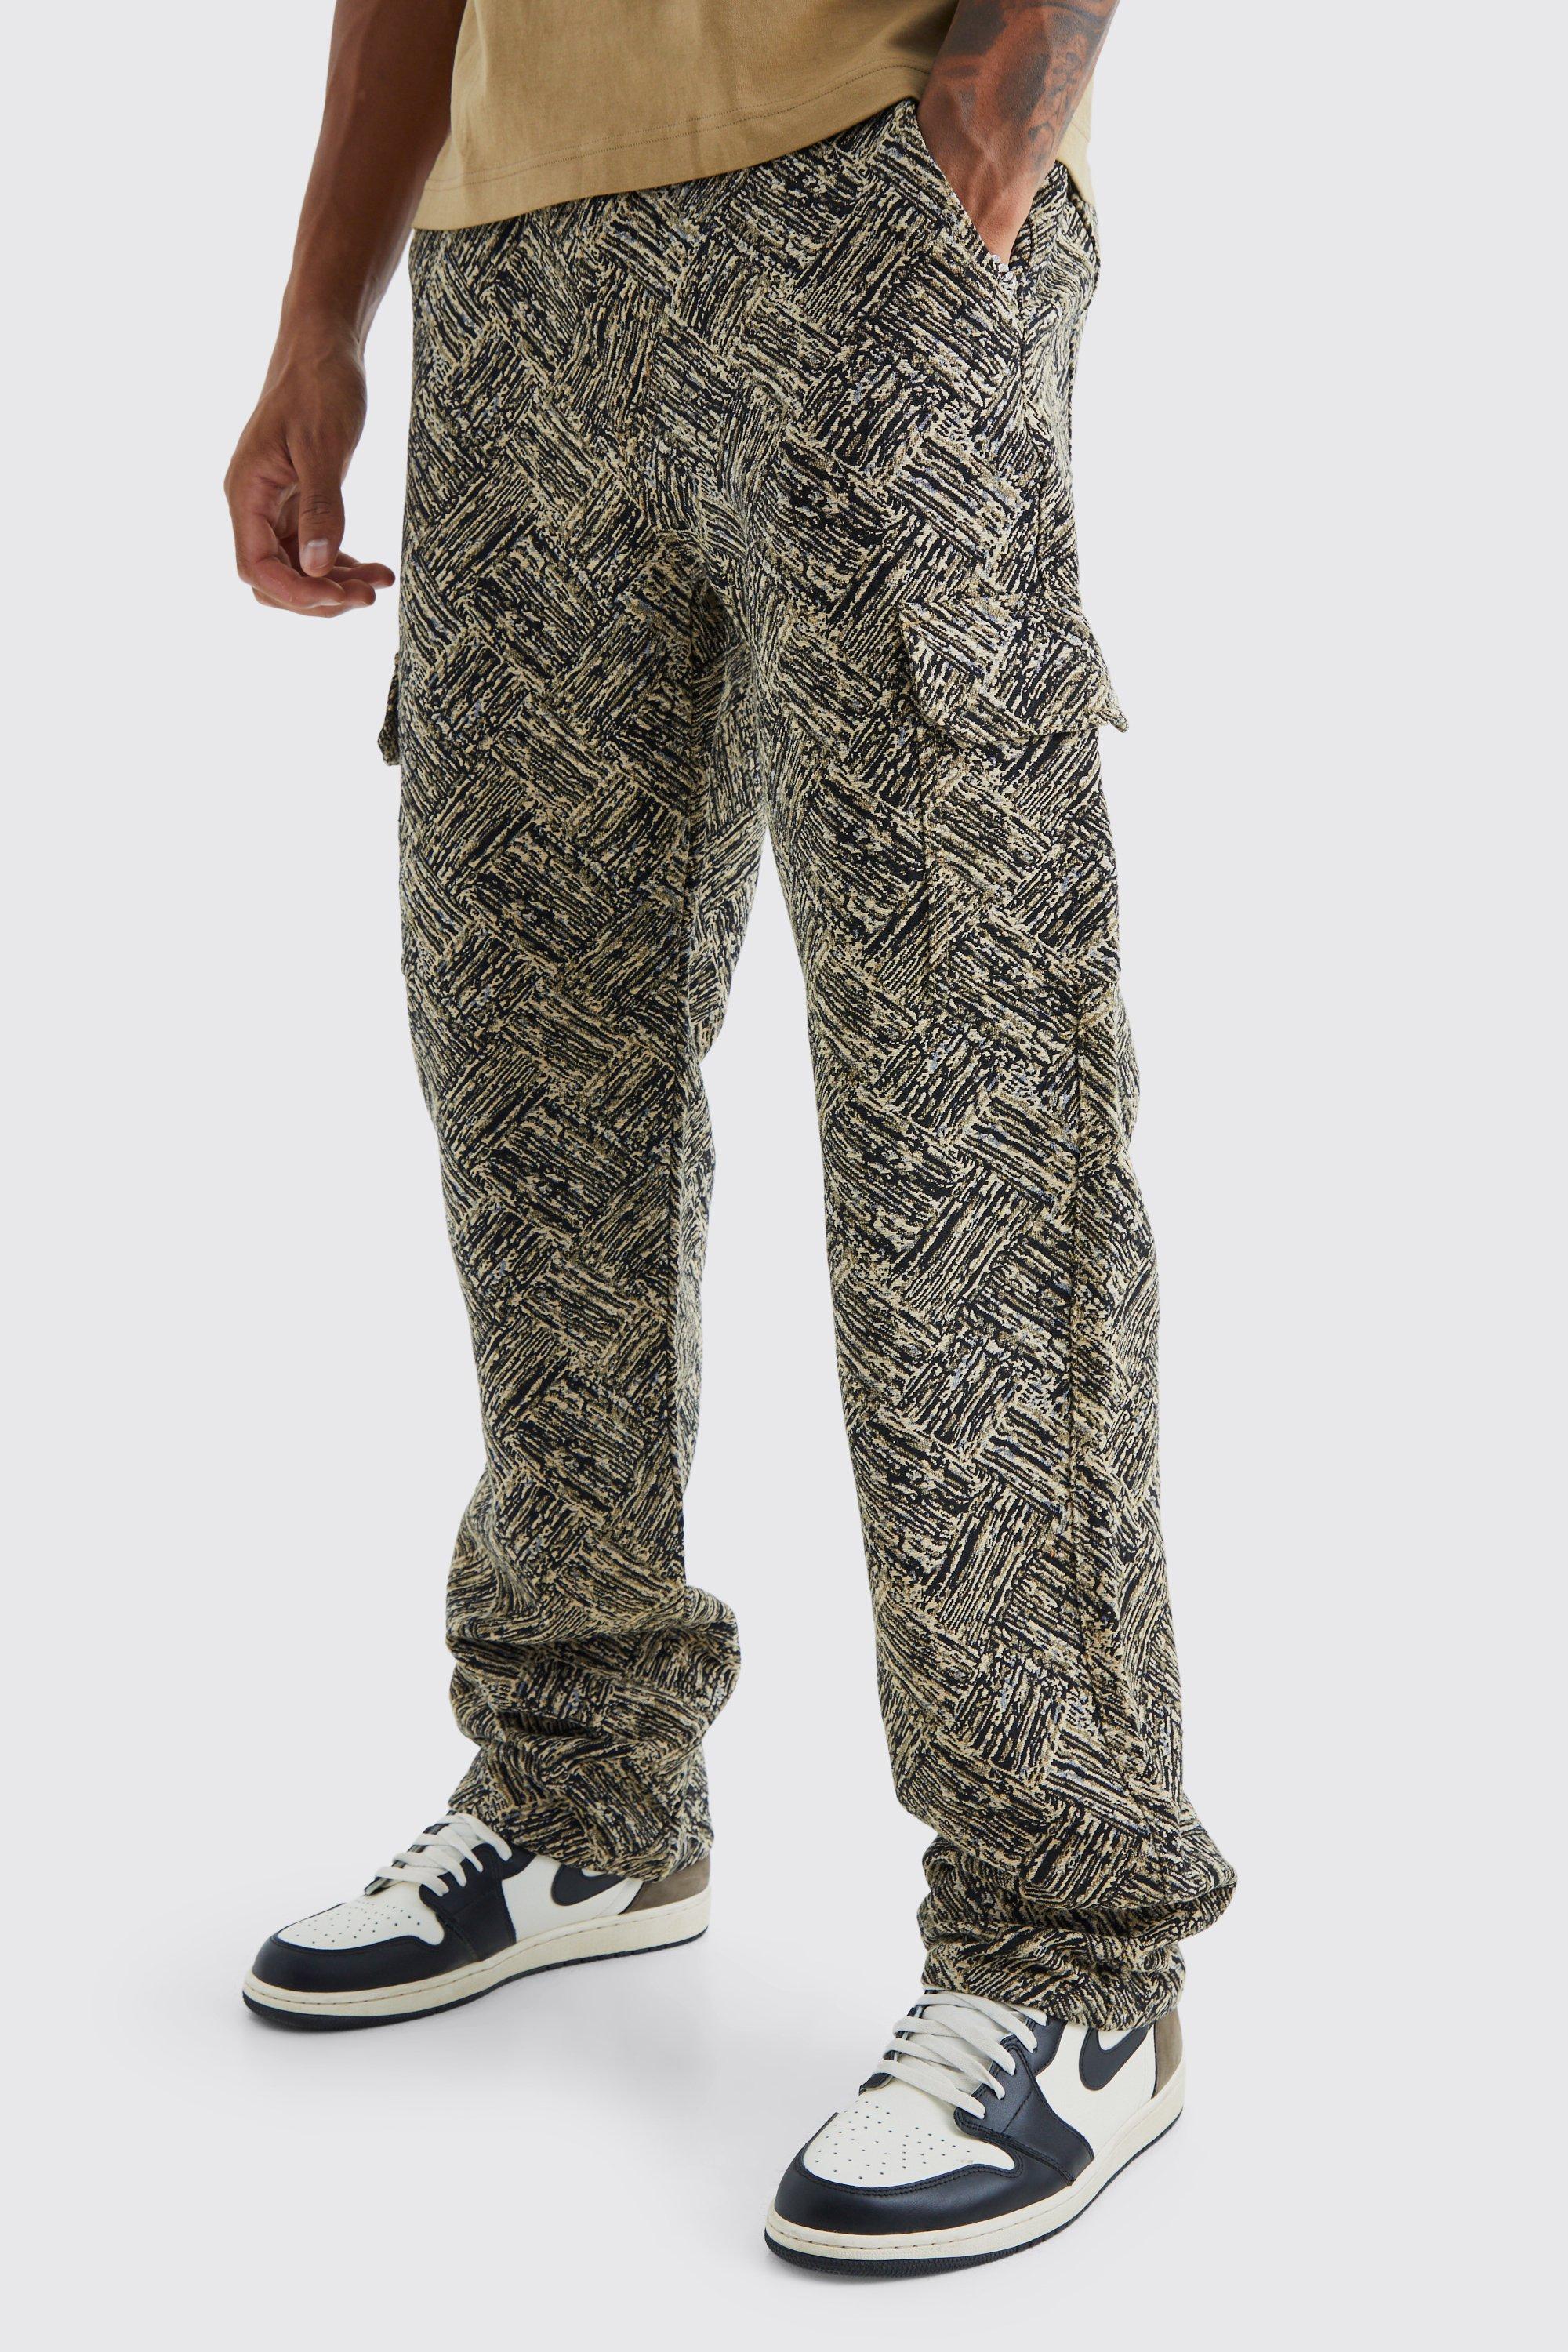 tall - pantalon large à motif tapisserie homme - noir - 32, noir